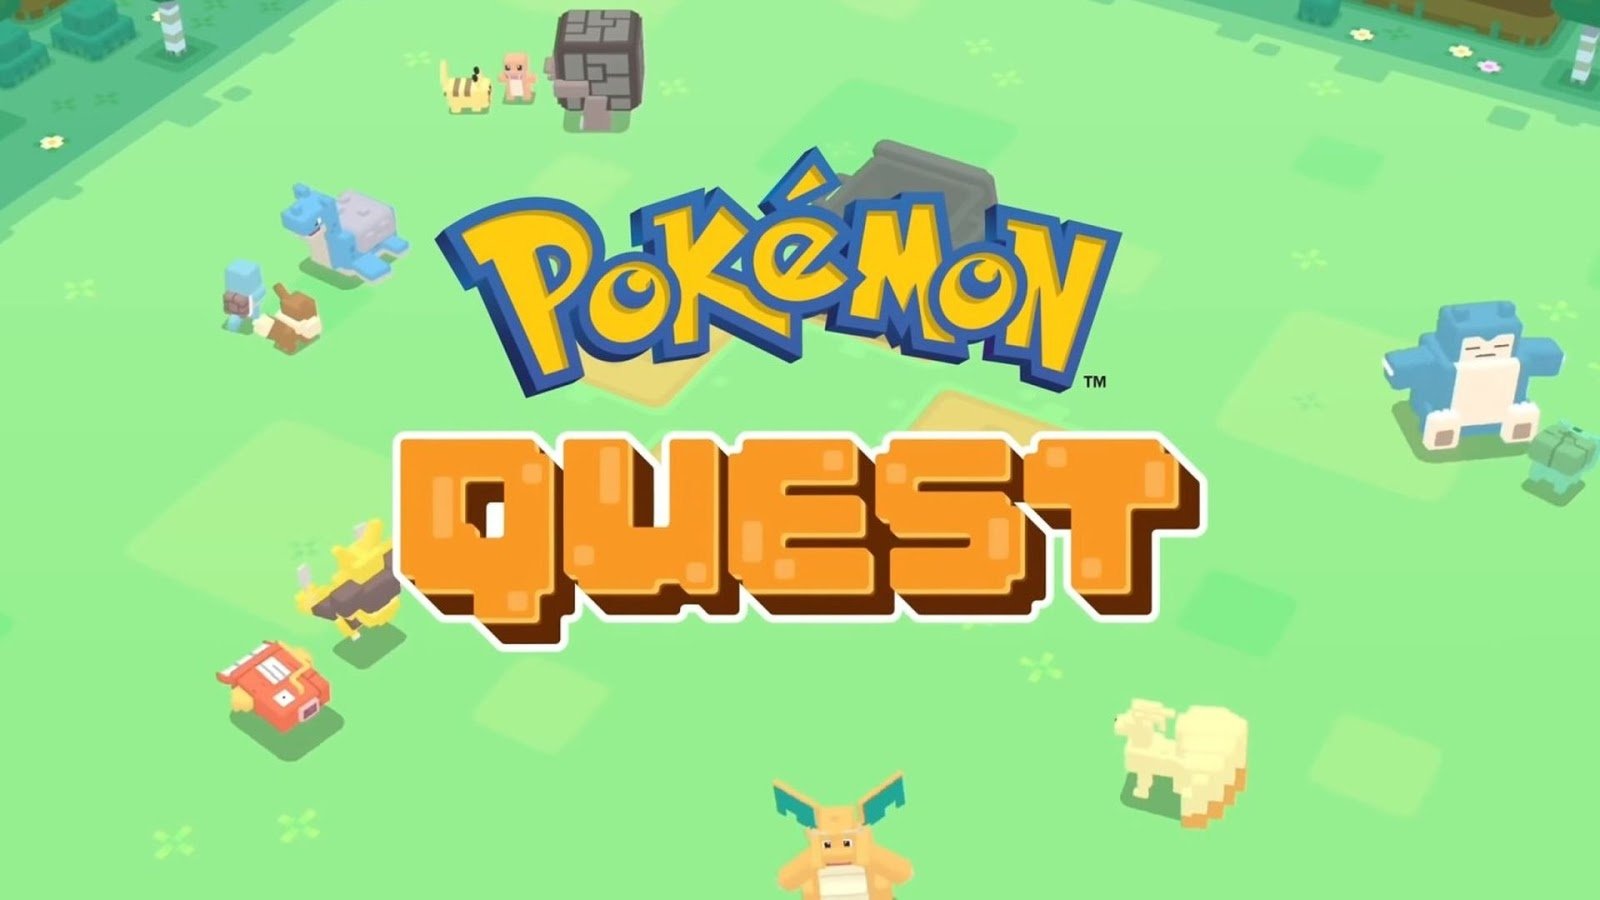 Pokémon quest